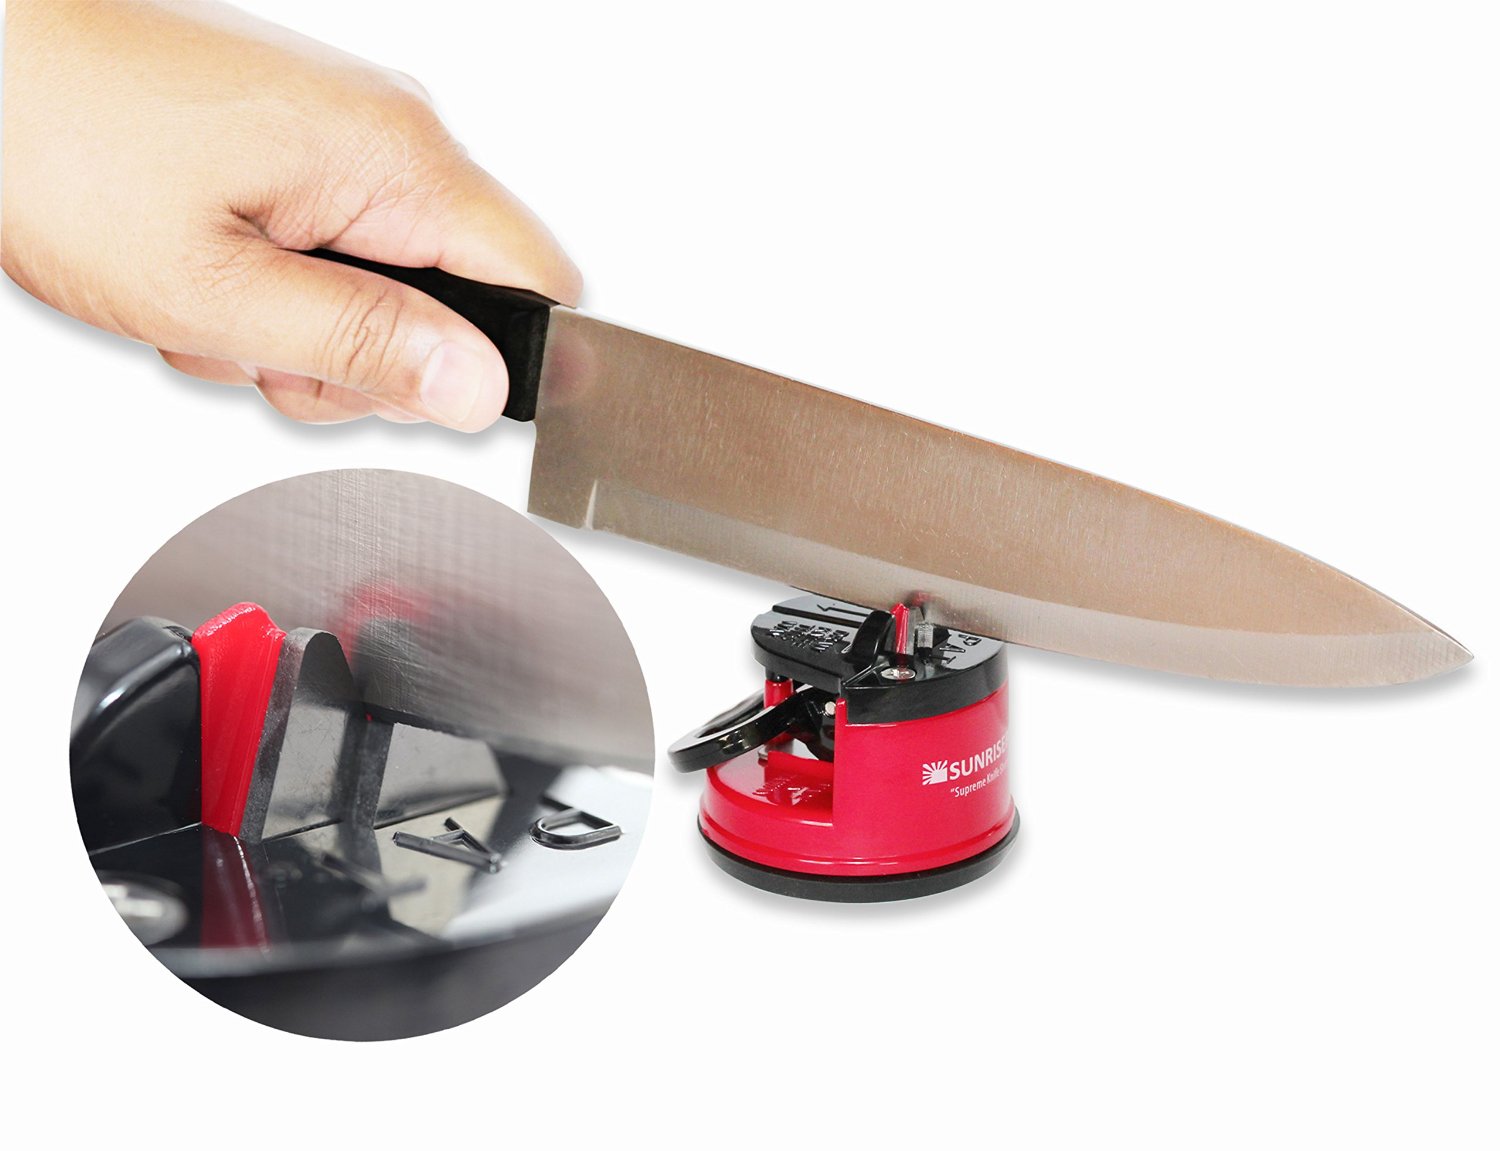 SunrisePro Knife Sharpener Knife Sharpener Reviews